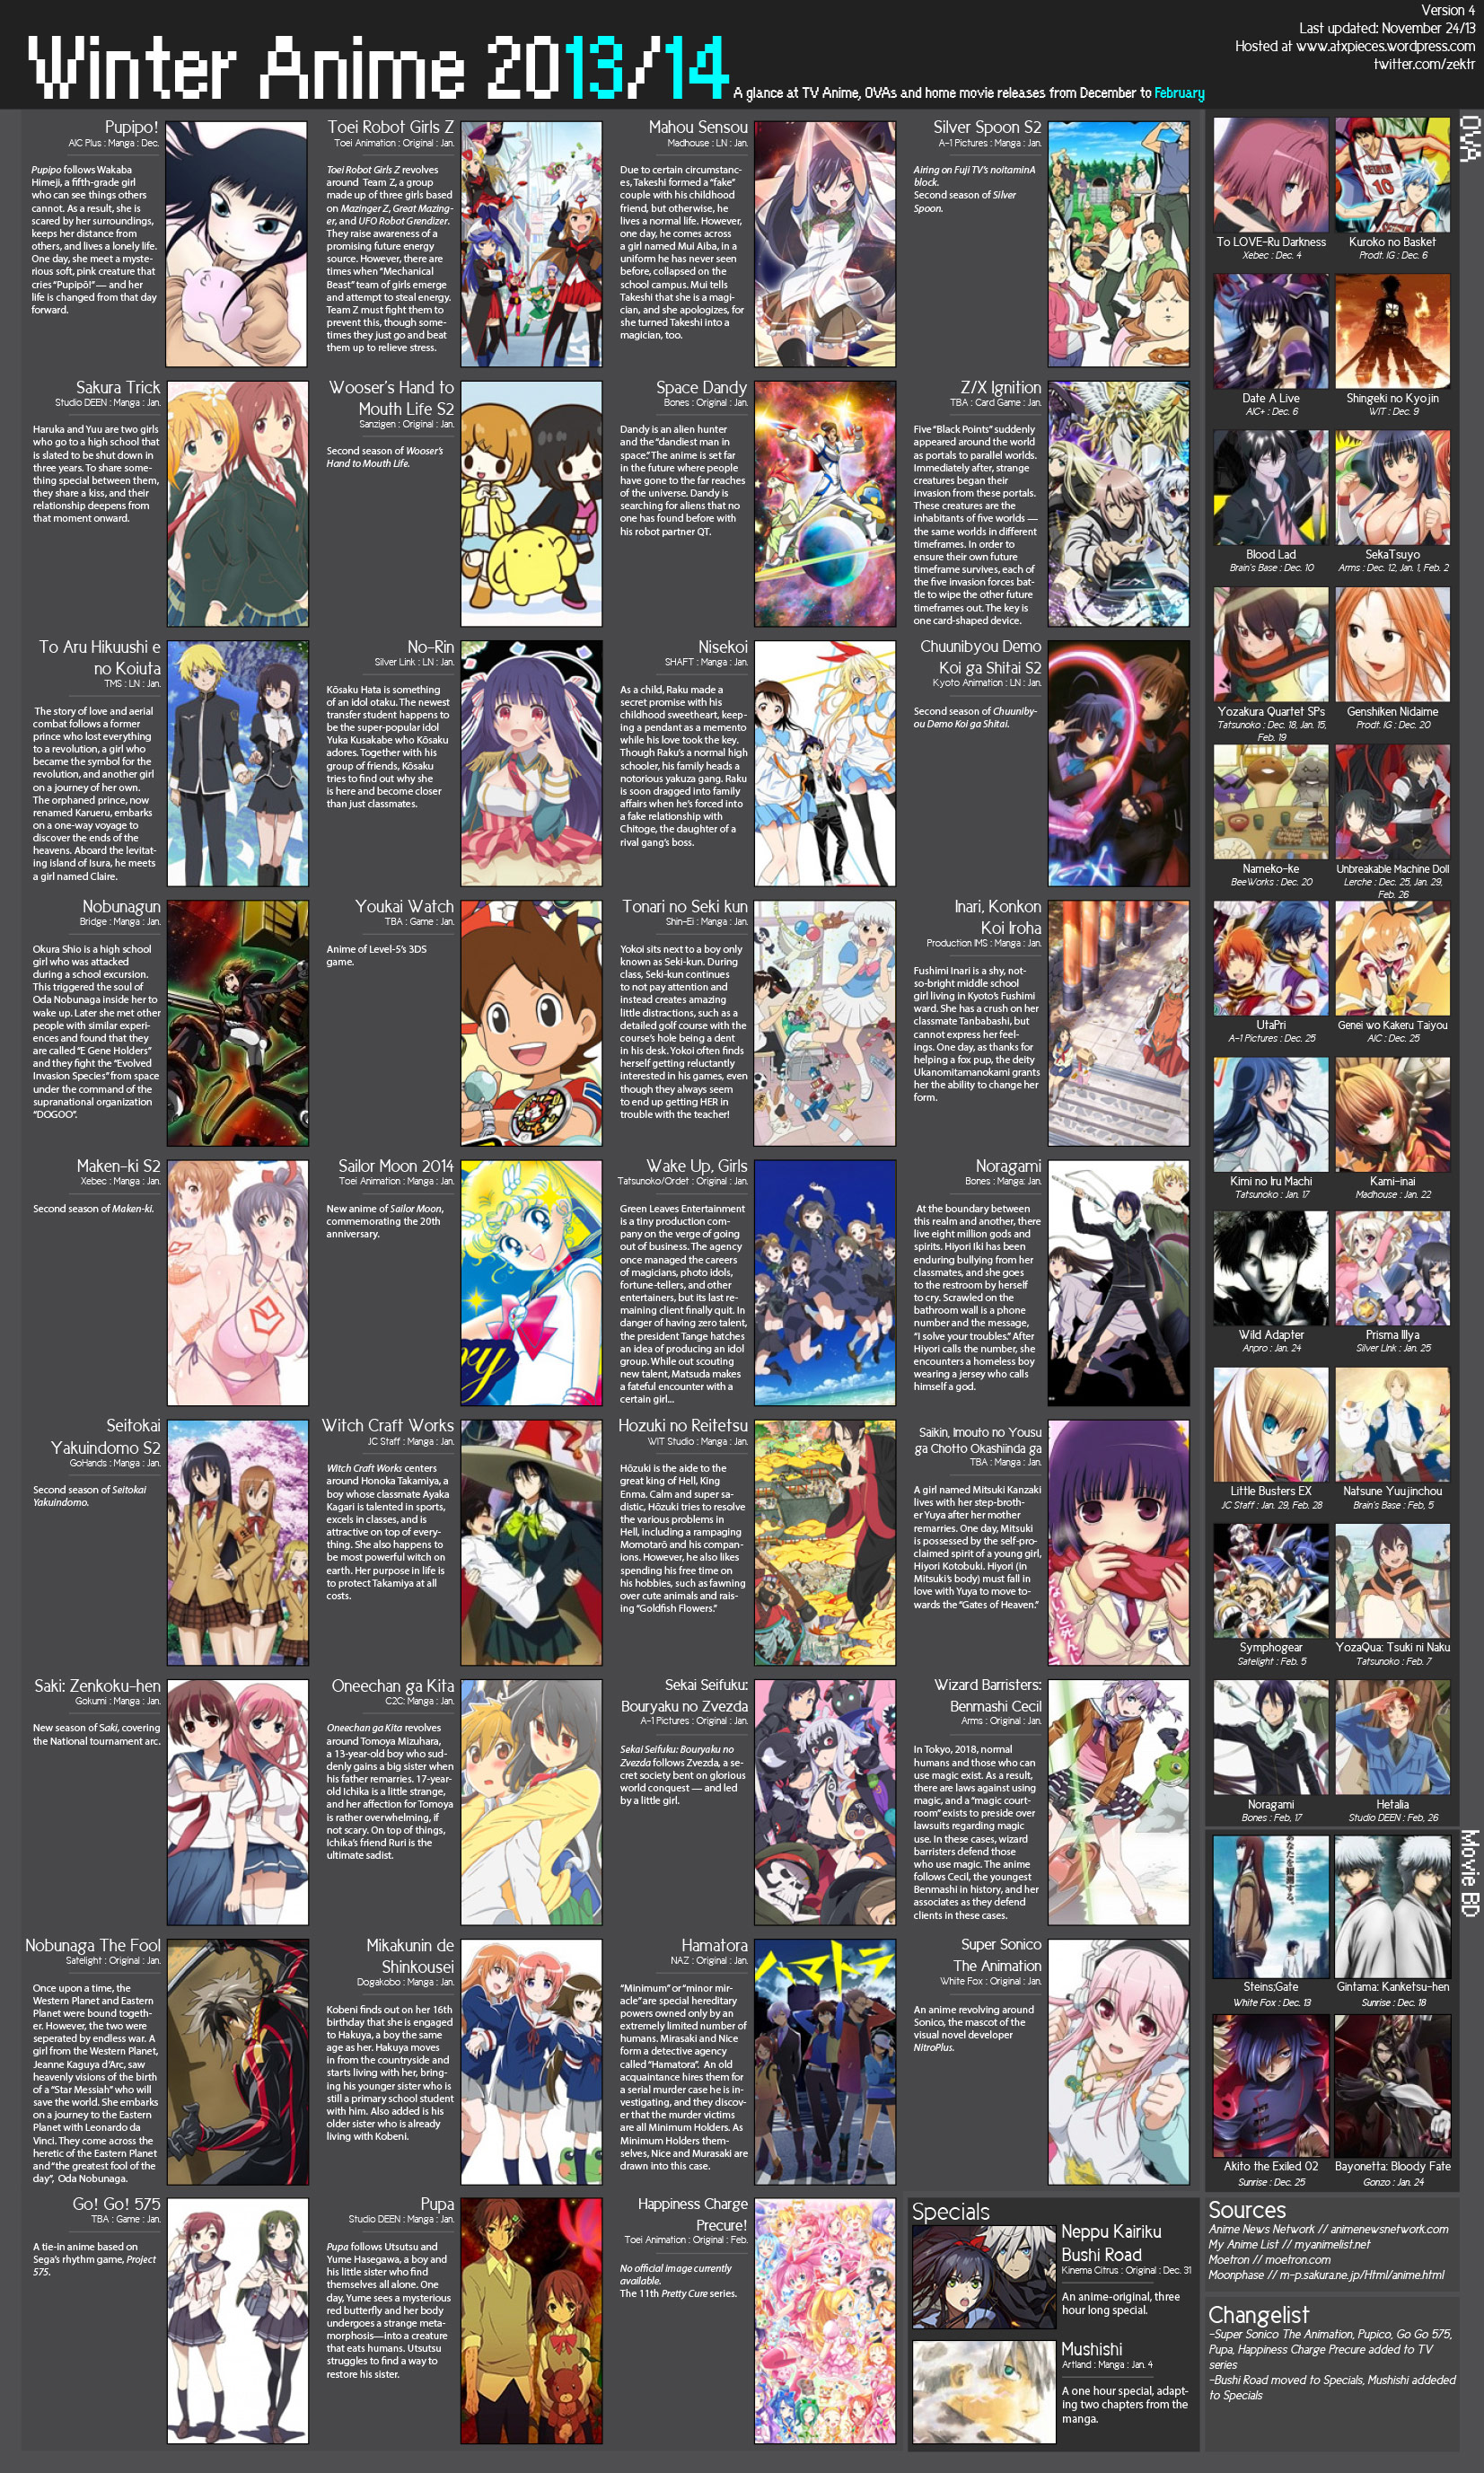 Anime Spring 2014 Lineup